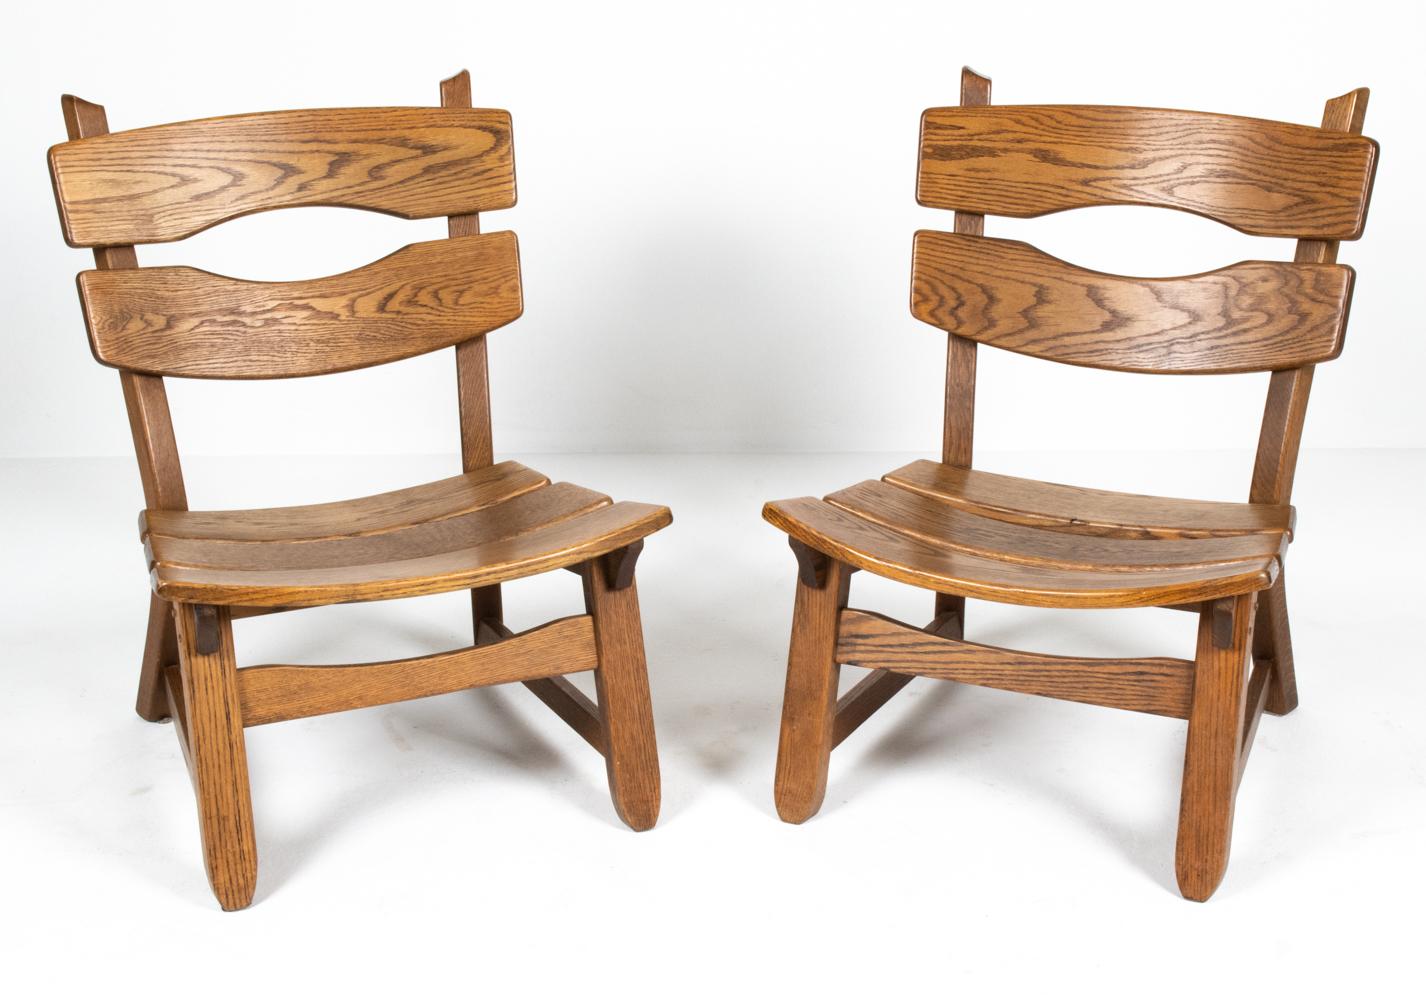 Paire de chaises longues en chêne massif brutalistes par Dittmann & Co pour AWA I.C., Pays-Bas, c. années 1970. Ces chaises de salon sans accoudoirs sont construites entièrement en bois de chêne teinté foncé, avec une assise et un dossier à lattes